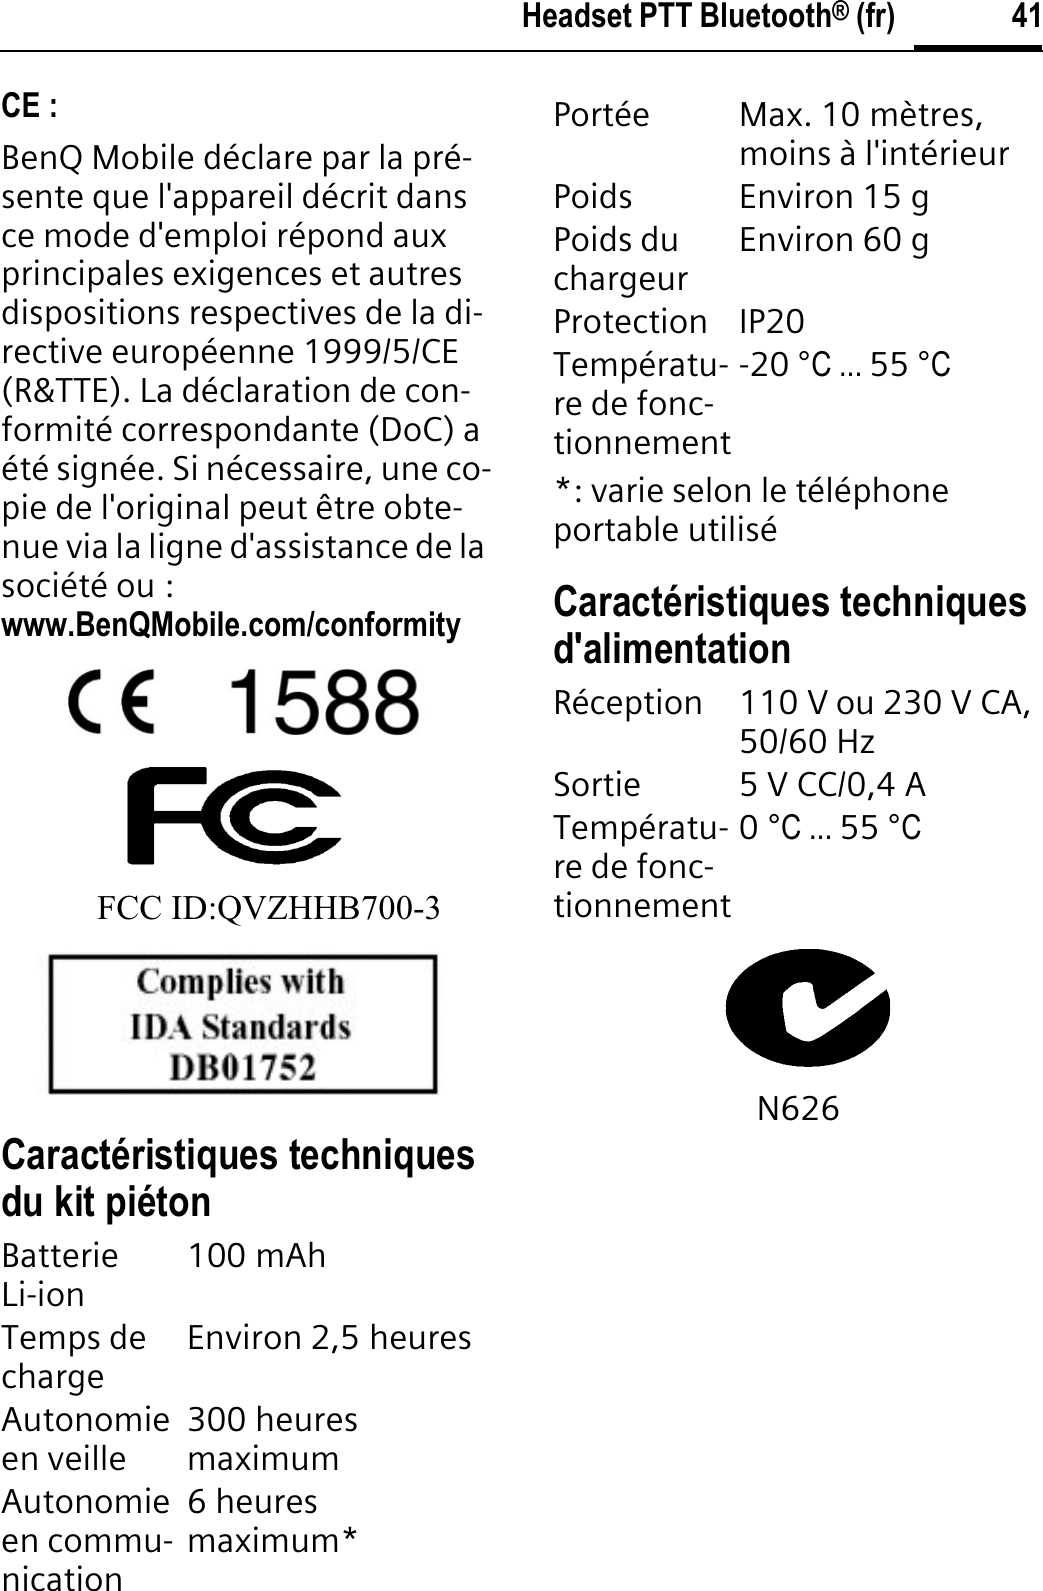 41Headset PTT Bluetooth® (fr)CE :BenQ Mobile déclare par la pré-sente que l&apos;appareil décrit dans ce mode d&apos;emploi répond aux principales exigences et autres dispositions respectives de la di-rective européenne 1999/5/CE (R&amp;TTE). La déclaration de con-formité correspondante (DoC) a été signée. Si nécessaire, une co-pie de l&apos;original peut être obte-nue via la ligne d&apos;assistance de la société ou : www.BenQMobile.com/conformityFCC ID:QVZHHB700-3Caractéristiques techniques du kit piéton*: varie selon le téléphone portable utiliséCaractéristiques techniques d&apos;alimentationN626BatterieLi-ion 100 mAh Temps de charge Environ 2,5 heuresAutonomieen veille 300 heures maximumAutonomieen commu-nication6 heures maximum*Portée Max. 10 mètres, moins à l&apos;intérieurPoids Environ 15 gPoids du chargeur Environ 60 gProtection IP20Températu-re de fonc-tionnement-20 °C ... 55 °CRéception 110 V ou 230 V CA, 50/60 HzSortie 5 V CC/0,4 ATempératu-re de fonc-tionnement0°C ... 55 °C